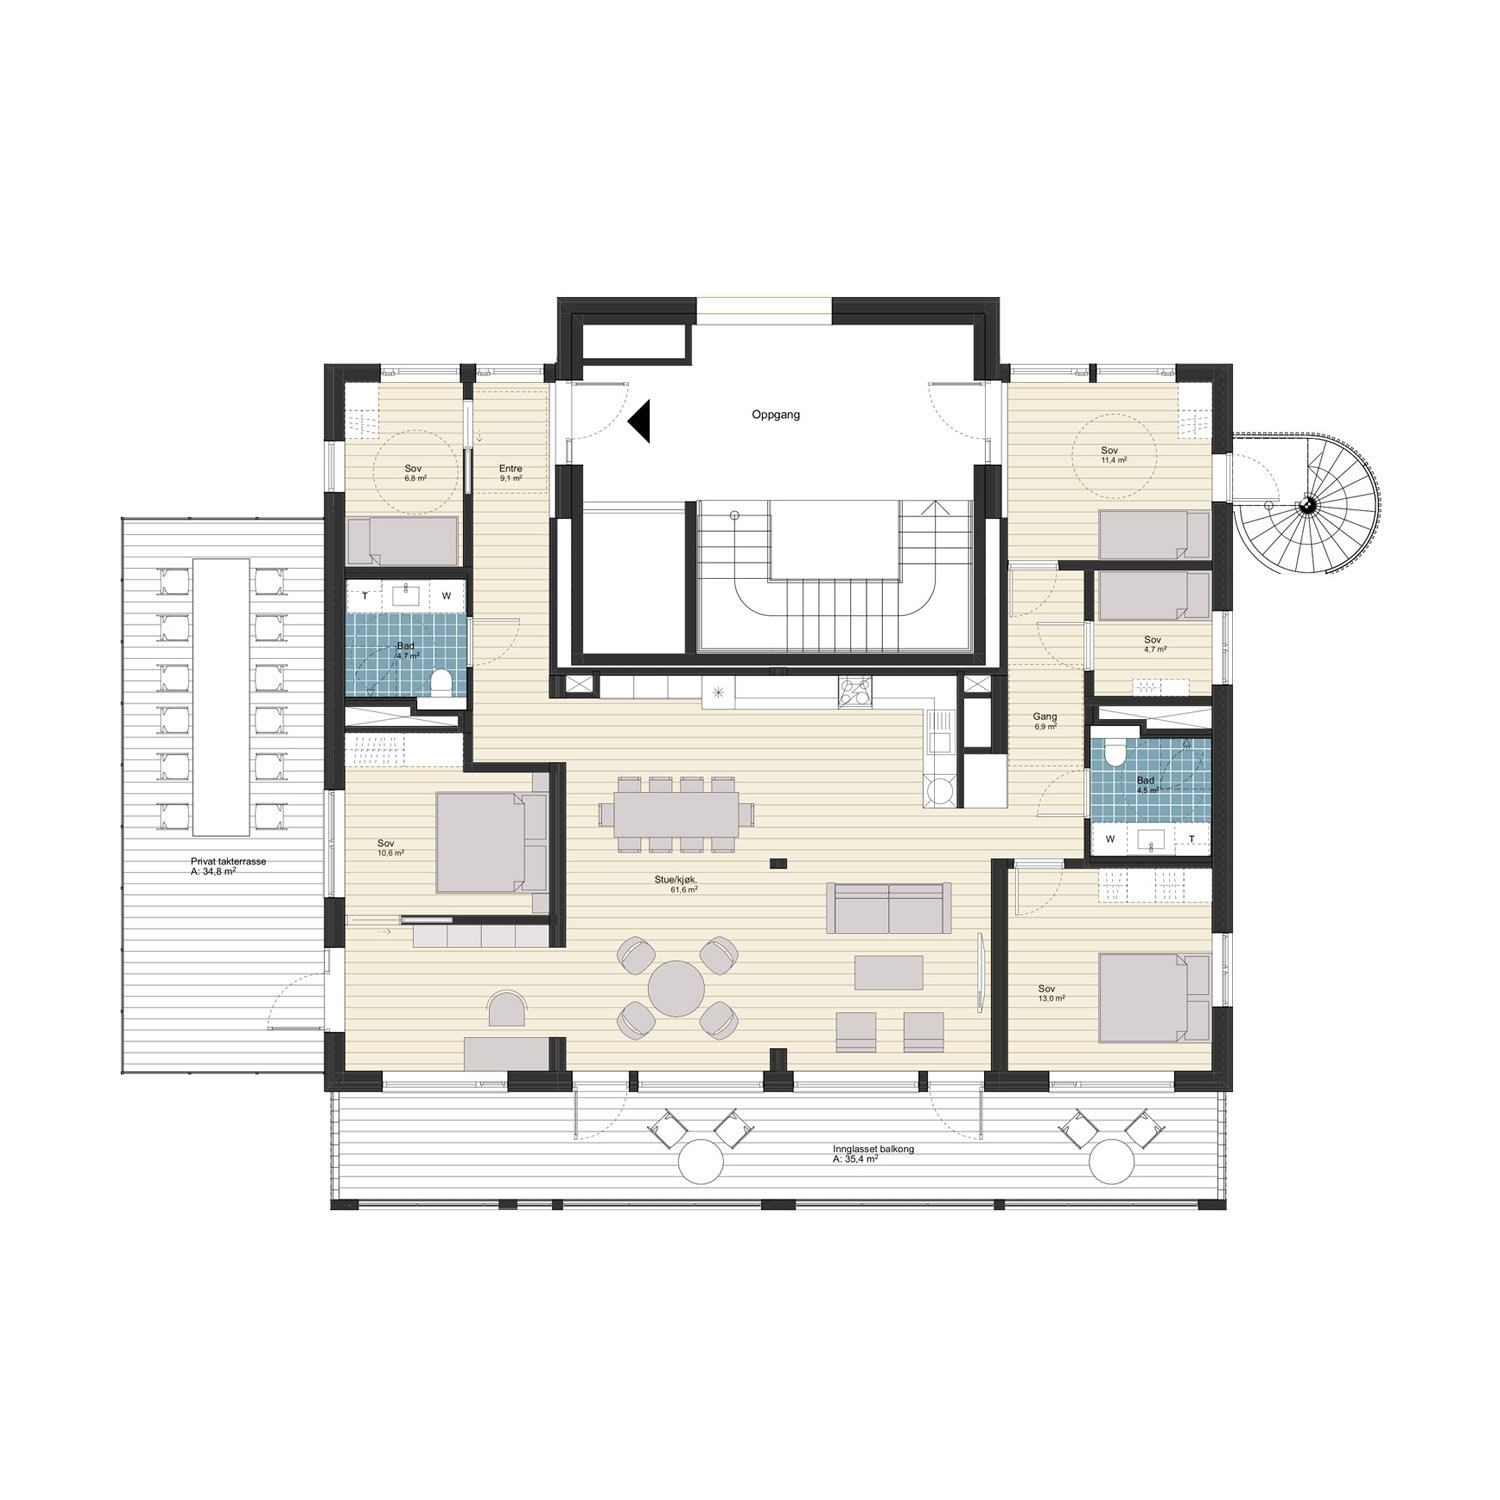 6-roms toppleilighet med privat takterrasse, 144 m² (BRA-i)